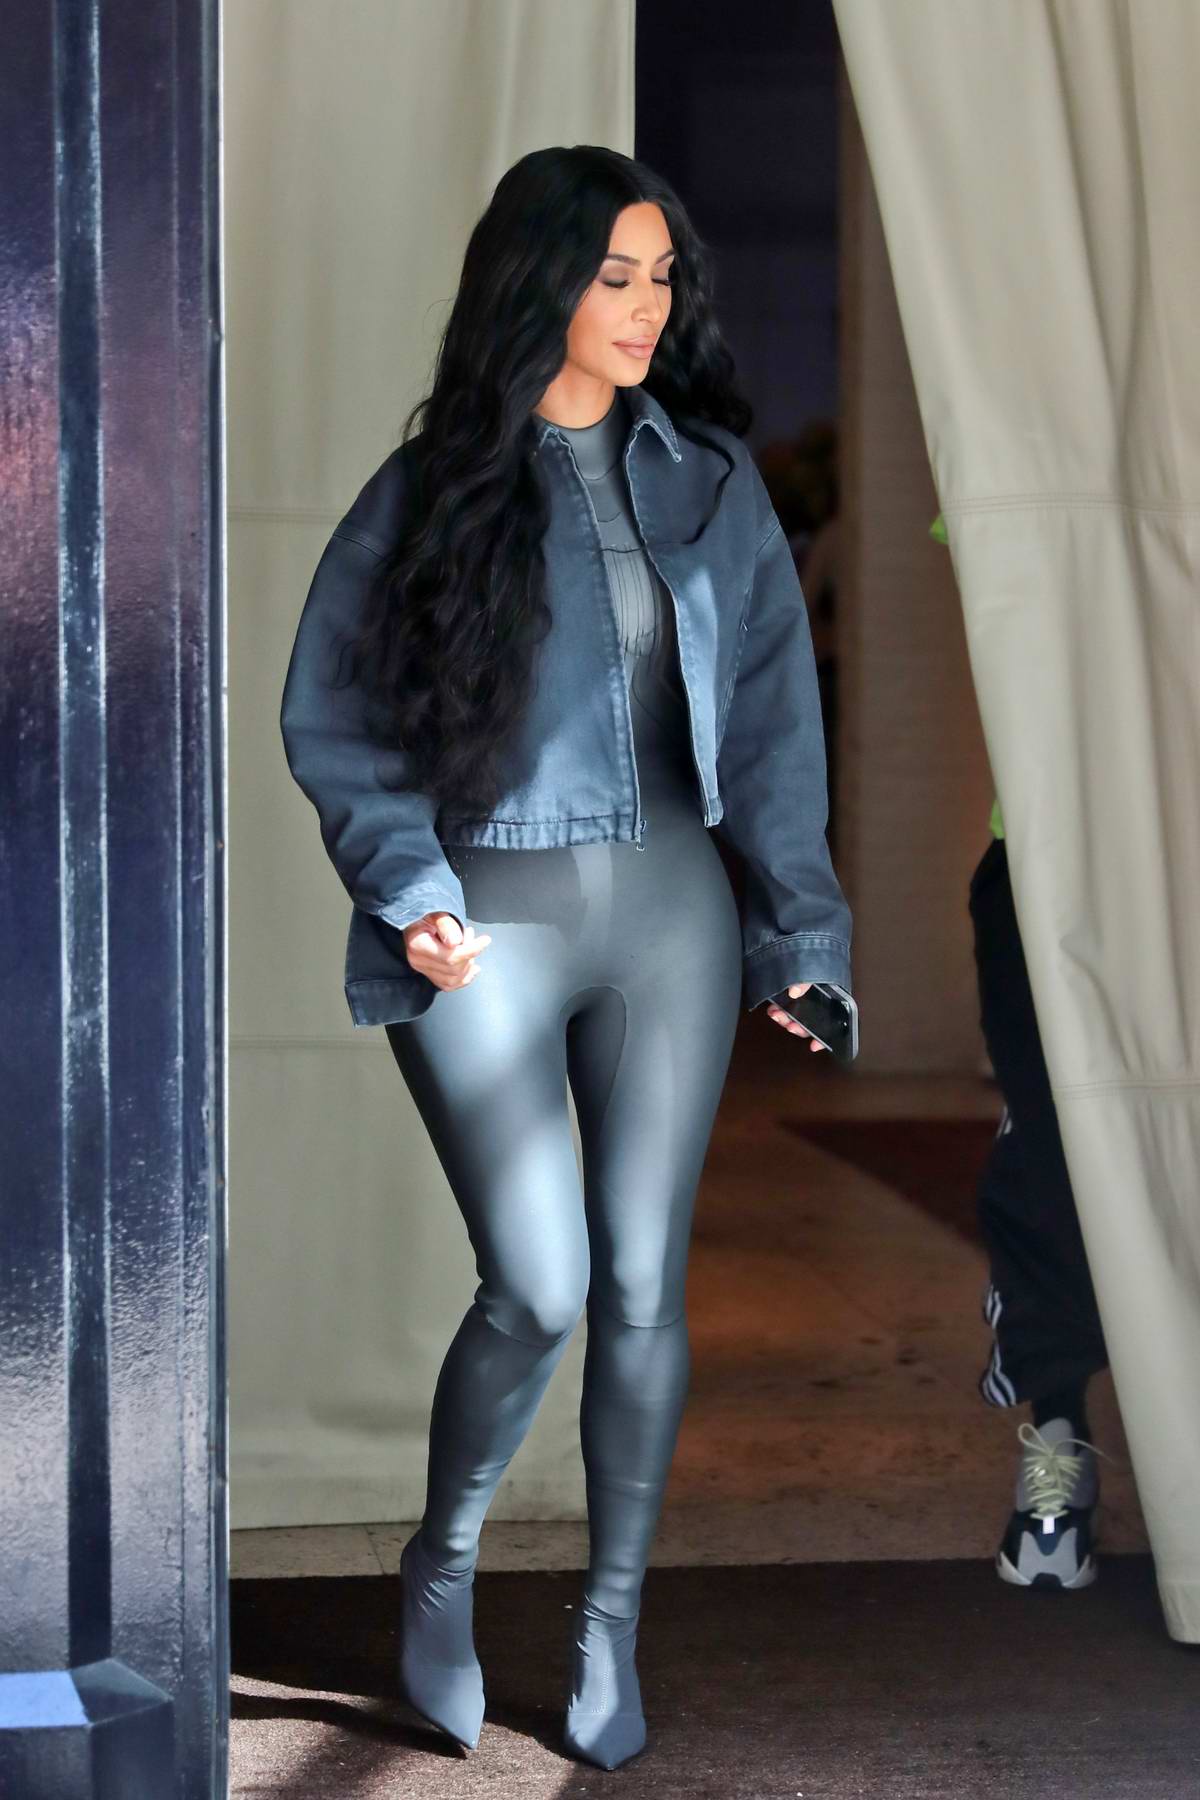 Kim Kardashian rocks dark grey leather bodysuit with matching